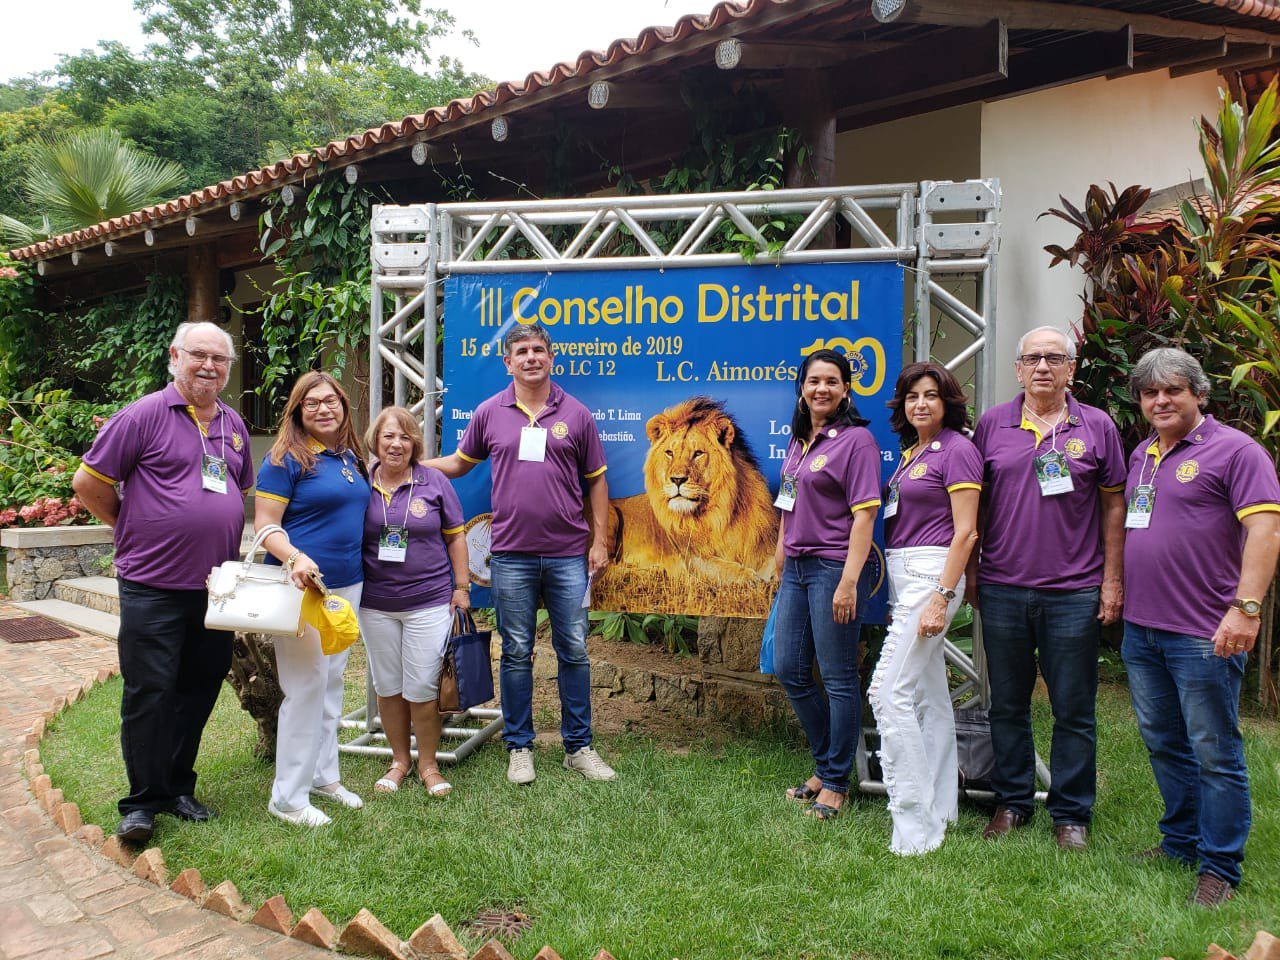 Lions Clube Caratinga Itaúna participa do Conselho Distrital em Aimorés